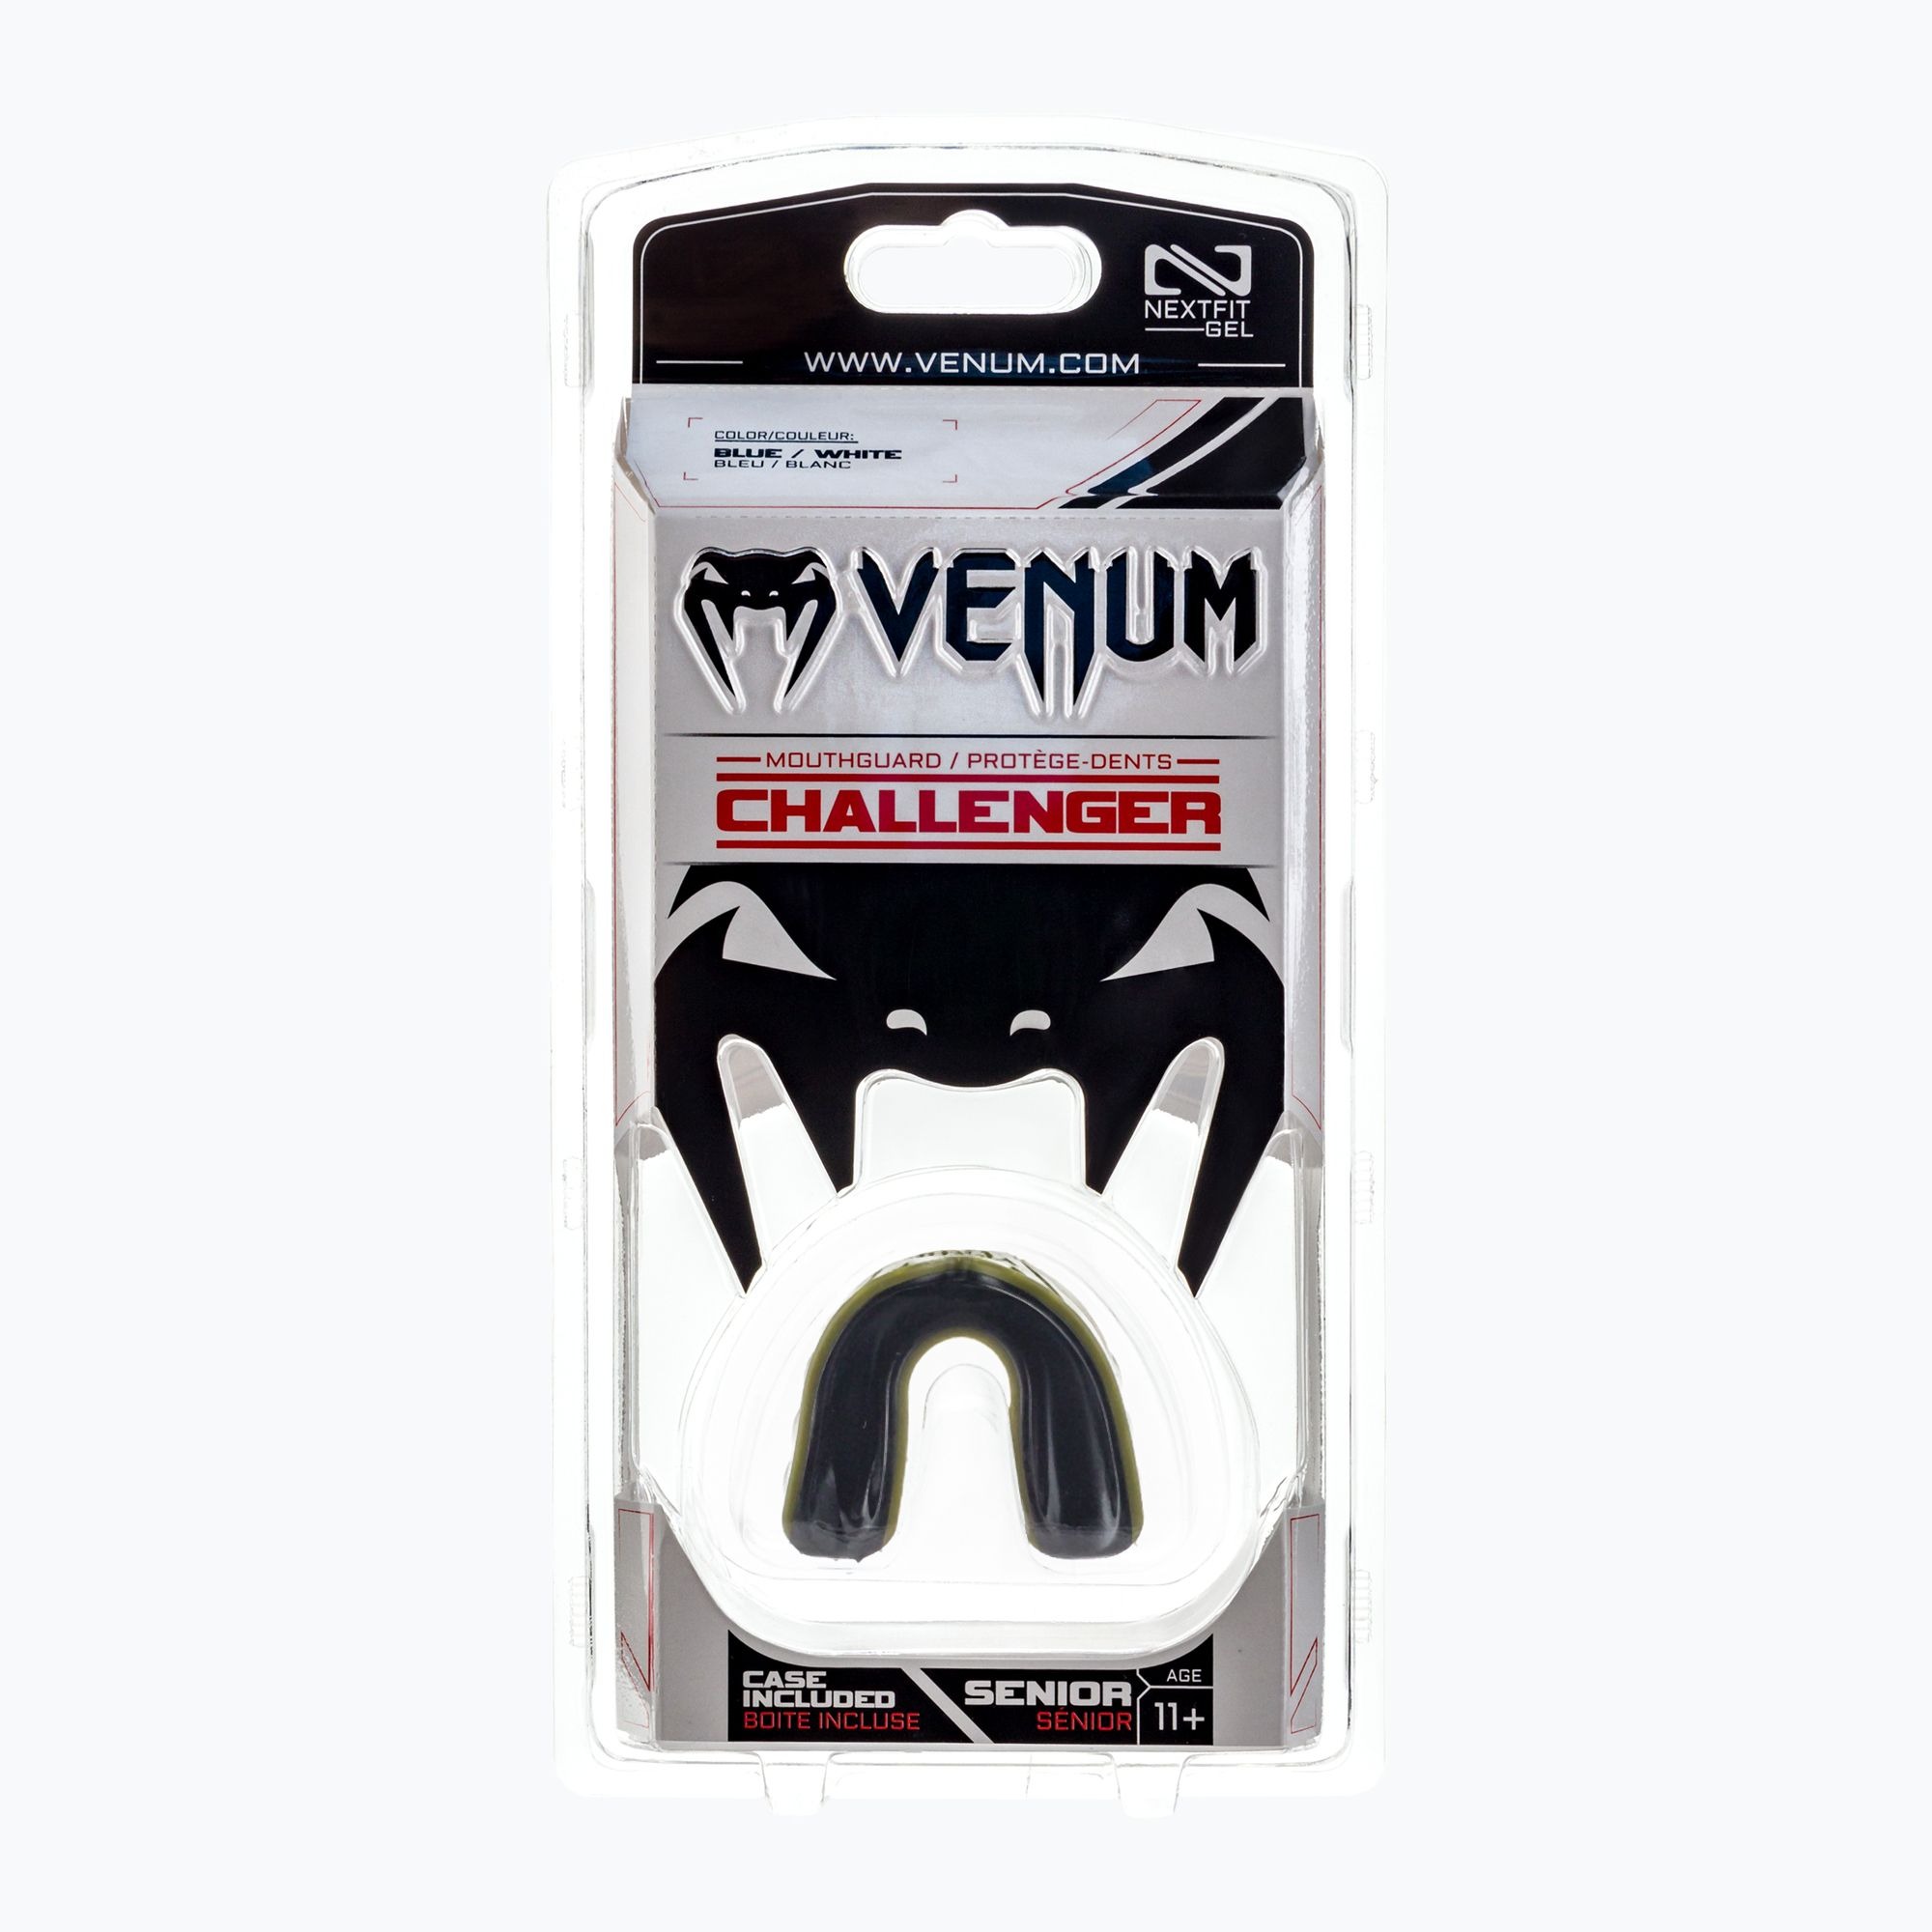  Капа Venum Challenger Mouthguard хаки черная 